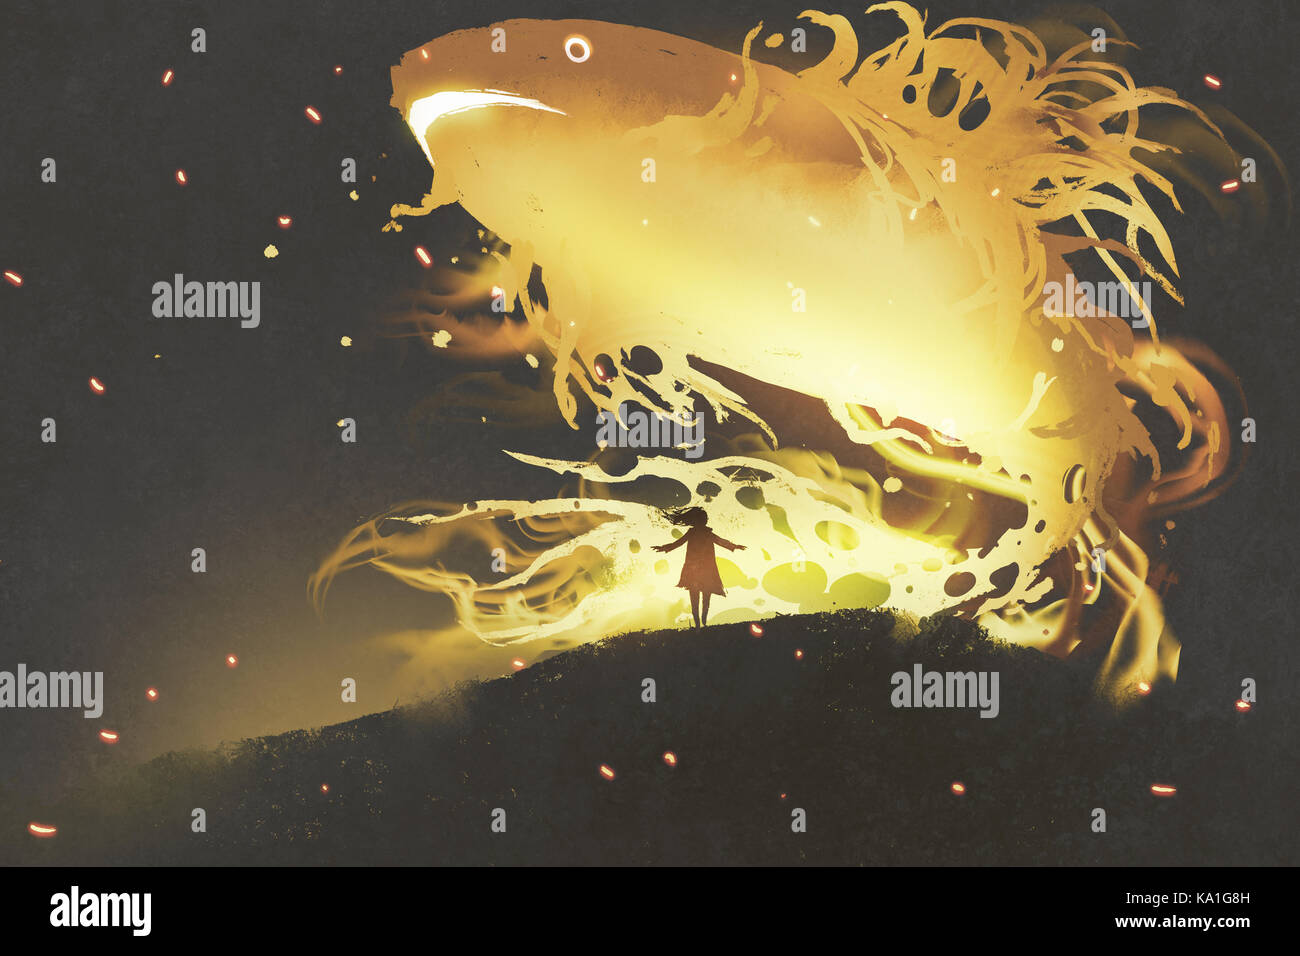 Poisson géant flottant dans le ciel nocturne au-dessus de petite fille, style art numérique, illustration peinture Banque D'Images